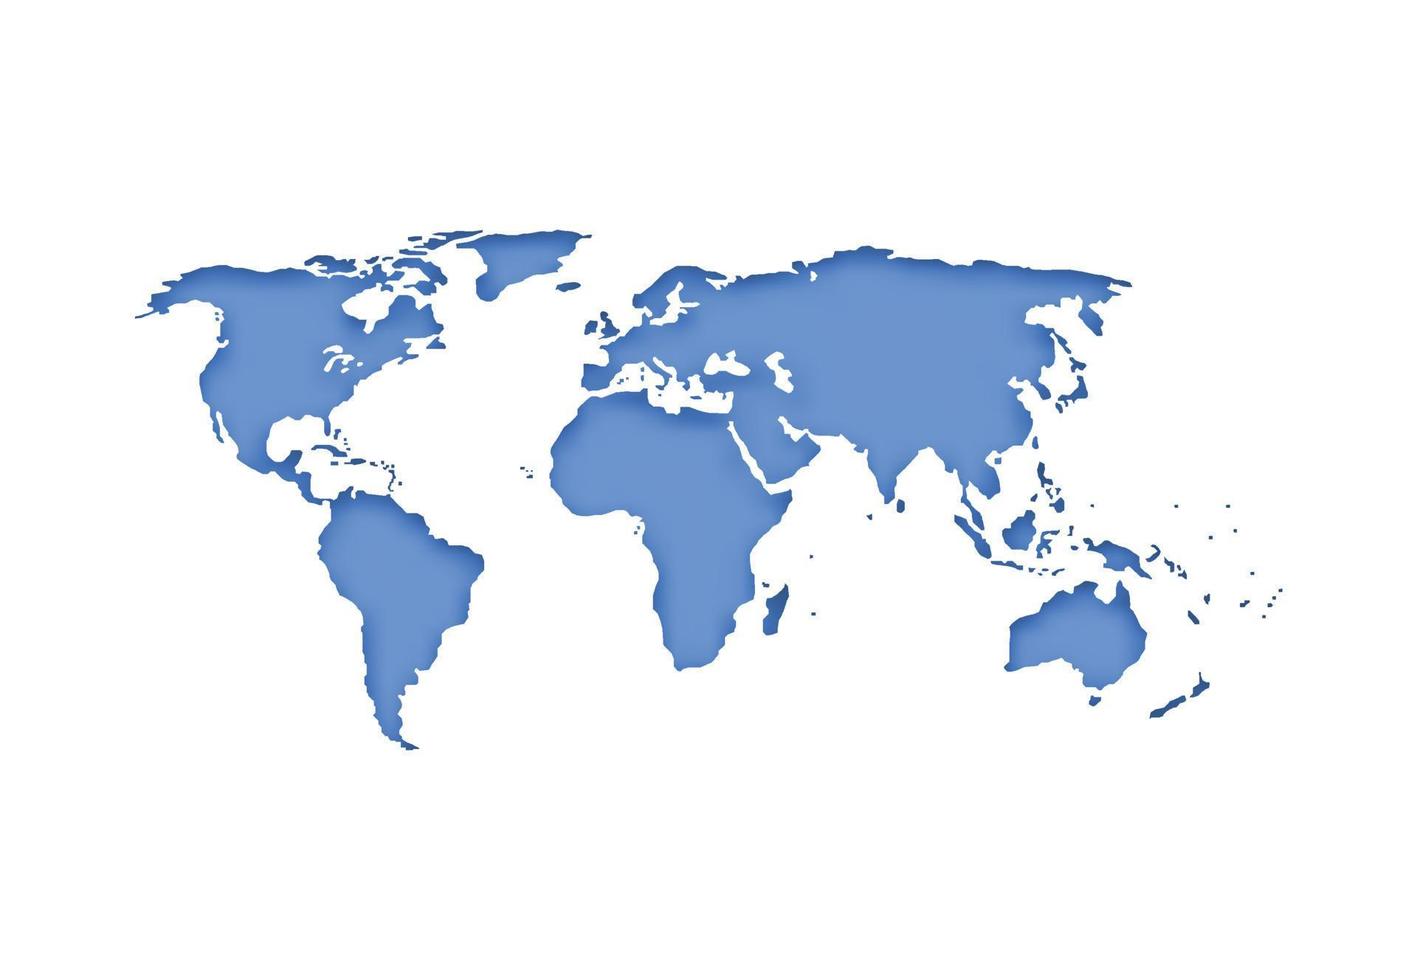 världskarta 3d. jorden blå karta och skugga för företag infographic, eko koncept. vektor illustration